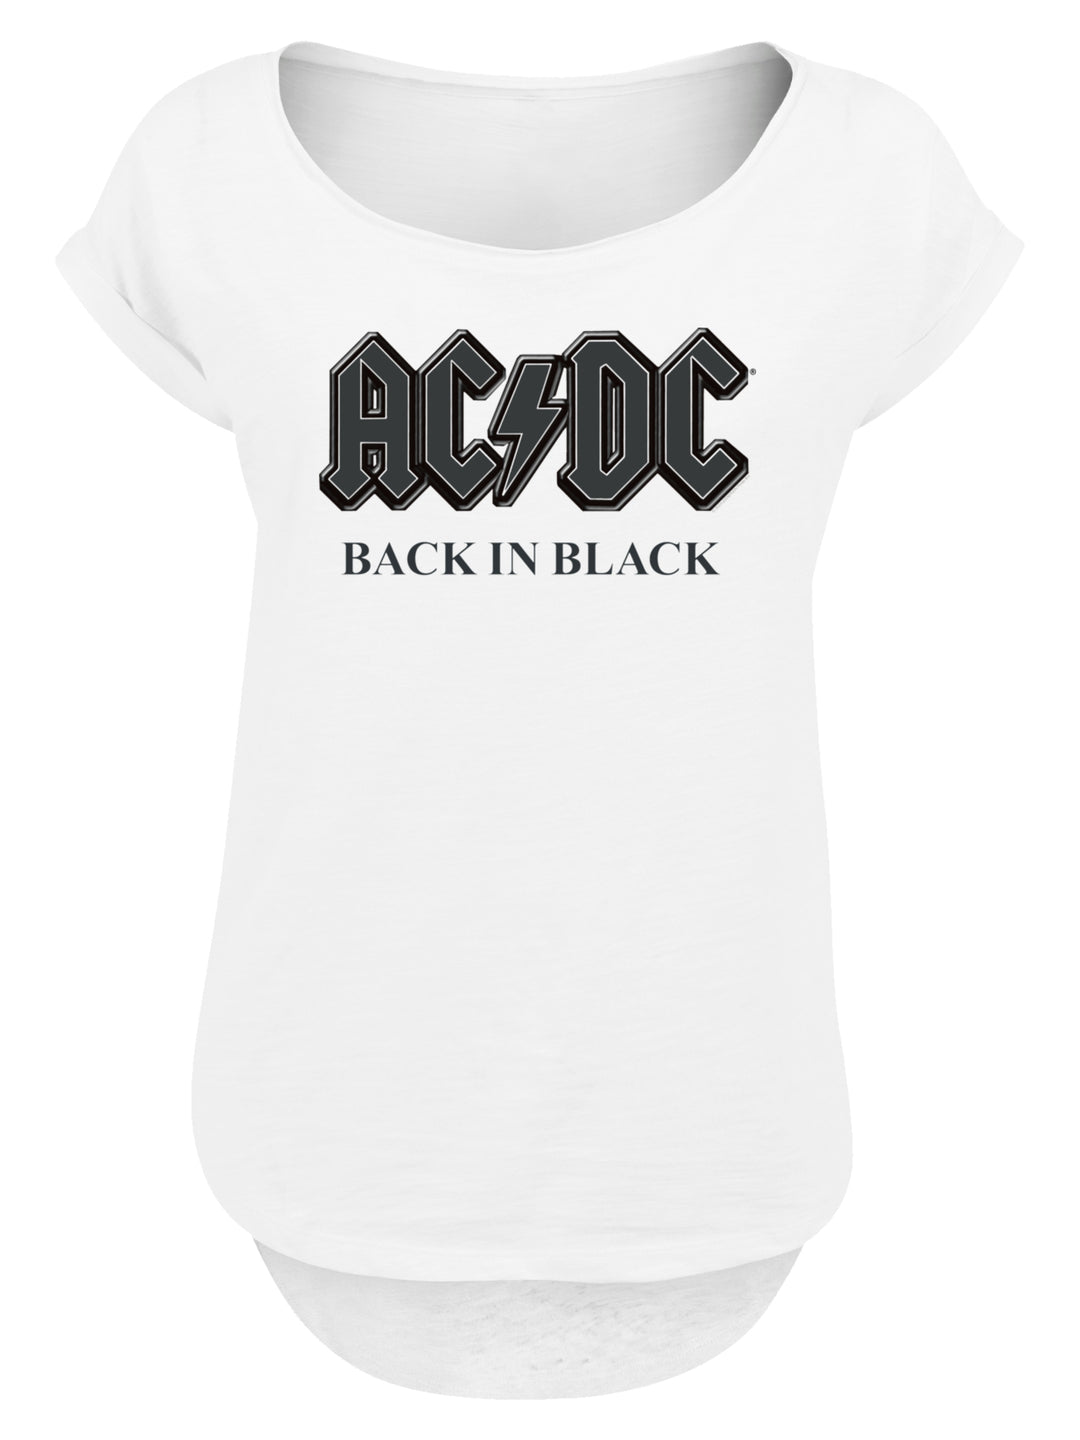 ACDC Back in Black with Ladies Long Slub Tee